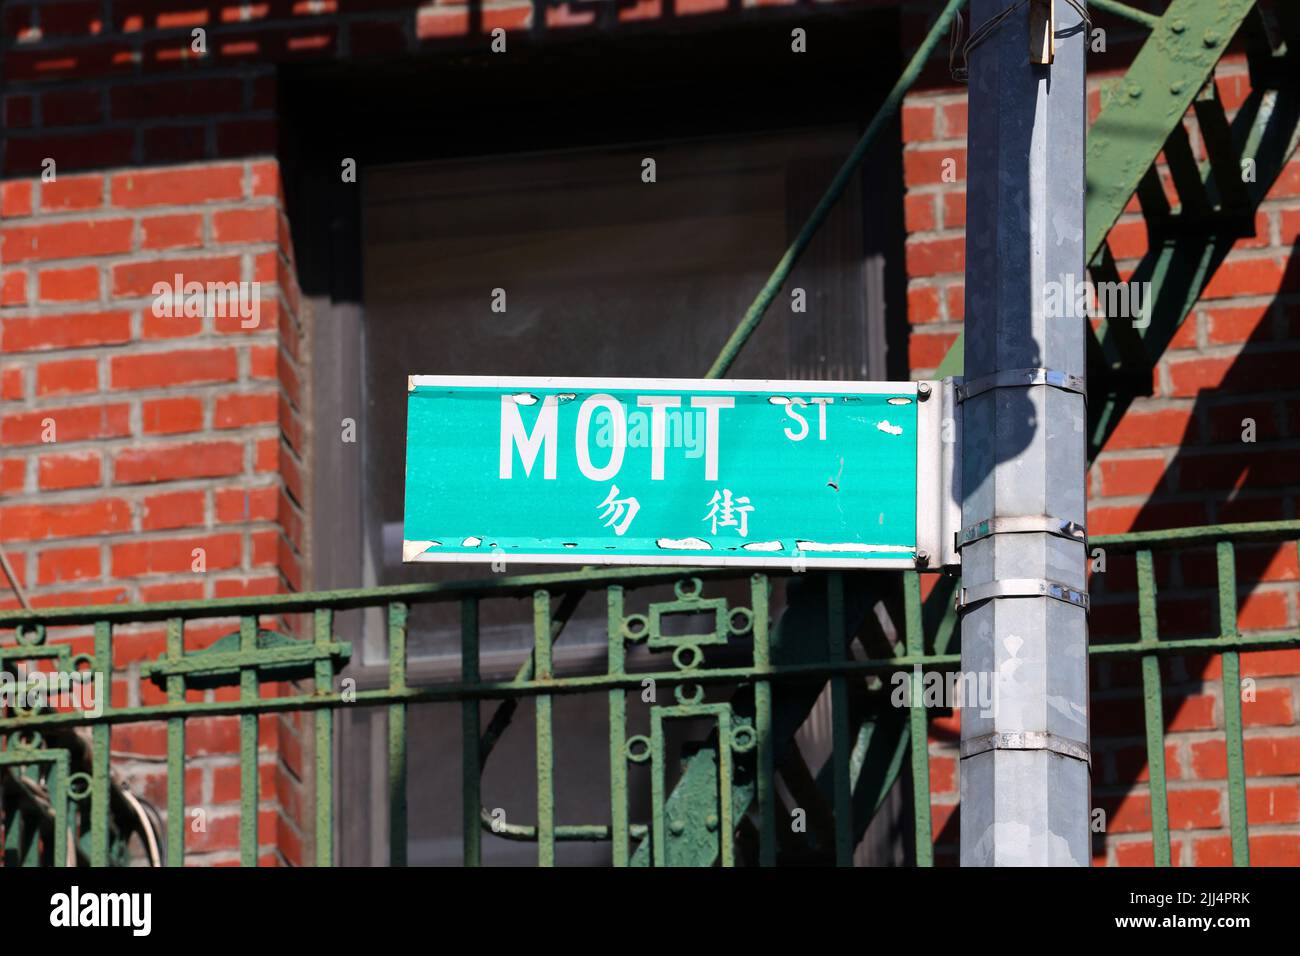 Señal de la calle Mott St 勿街 en el barrio chino de Manhattan, Nueva York. Señal de Mott Street Foto de stock